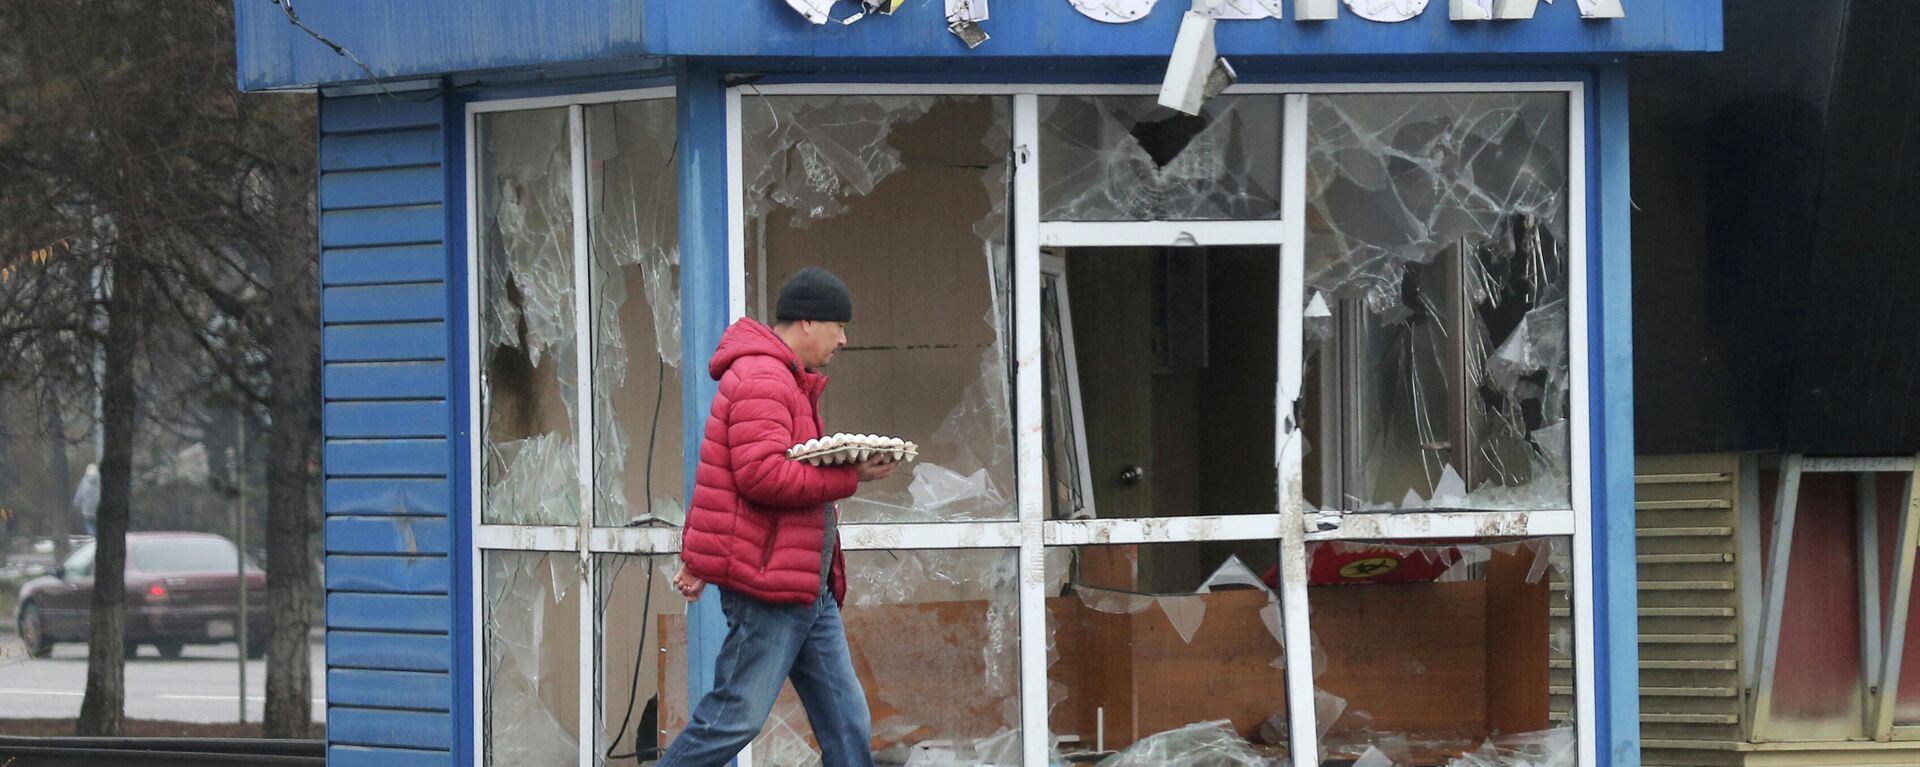 Un hombre pasa frente a una estación de Policía, destrozada durante las protestas masivas provocadas por el aumento del precio del combustible, en Almaty, Kazajistán, el 8 de enero de 2022 - Sputnik Mundo, 1920, 08.01.2022